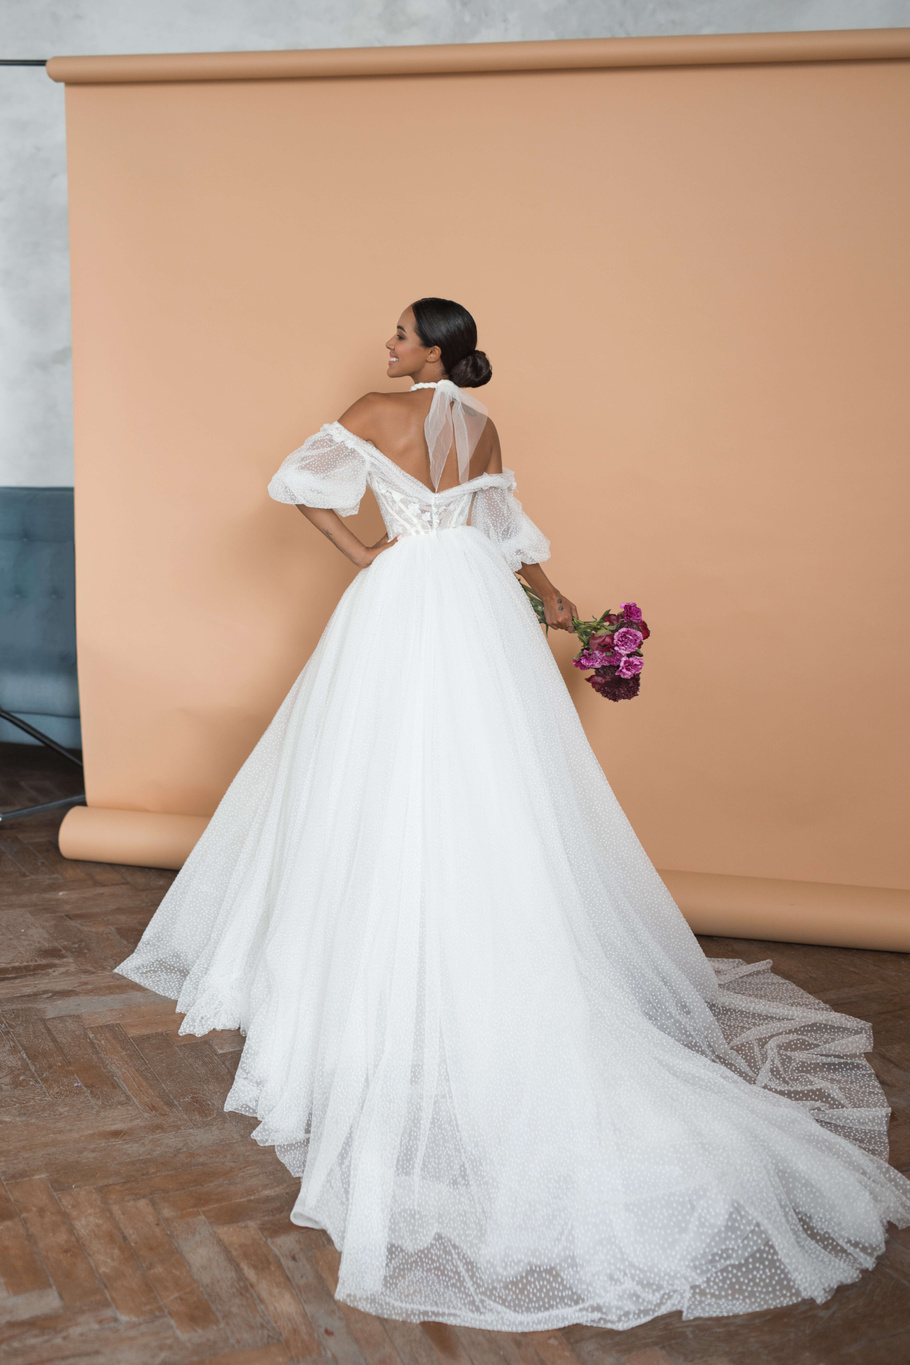 Купить свадебное платье «Этьен» Бламмо Биамо из коллекции Нимфа 2020 года в Екатеринбурге